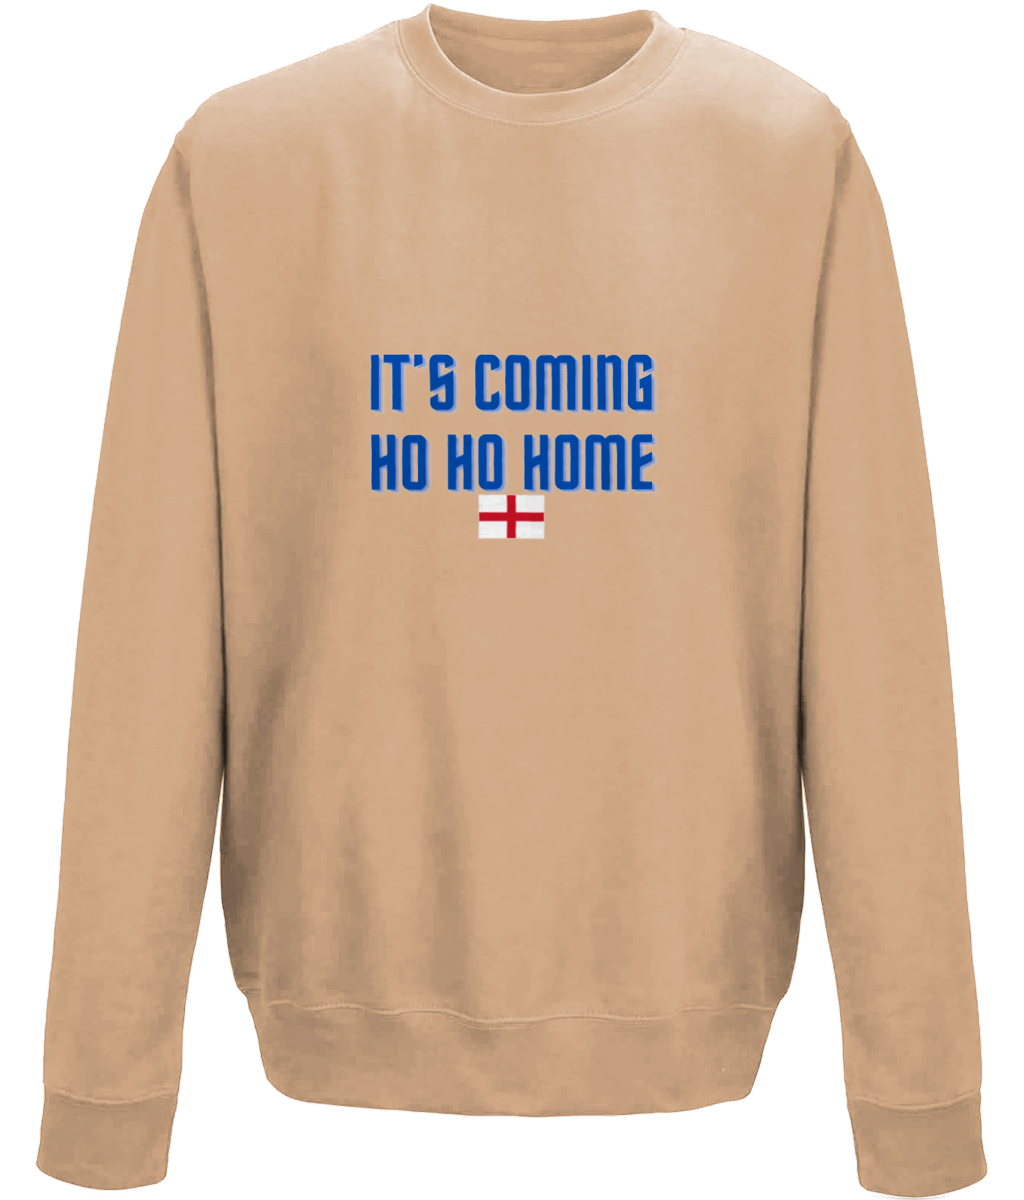 England Football - It’s Coming Ho Ho Home Christmas Jumper Sweatshirt